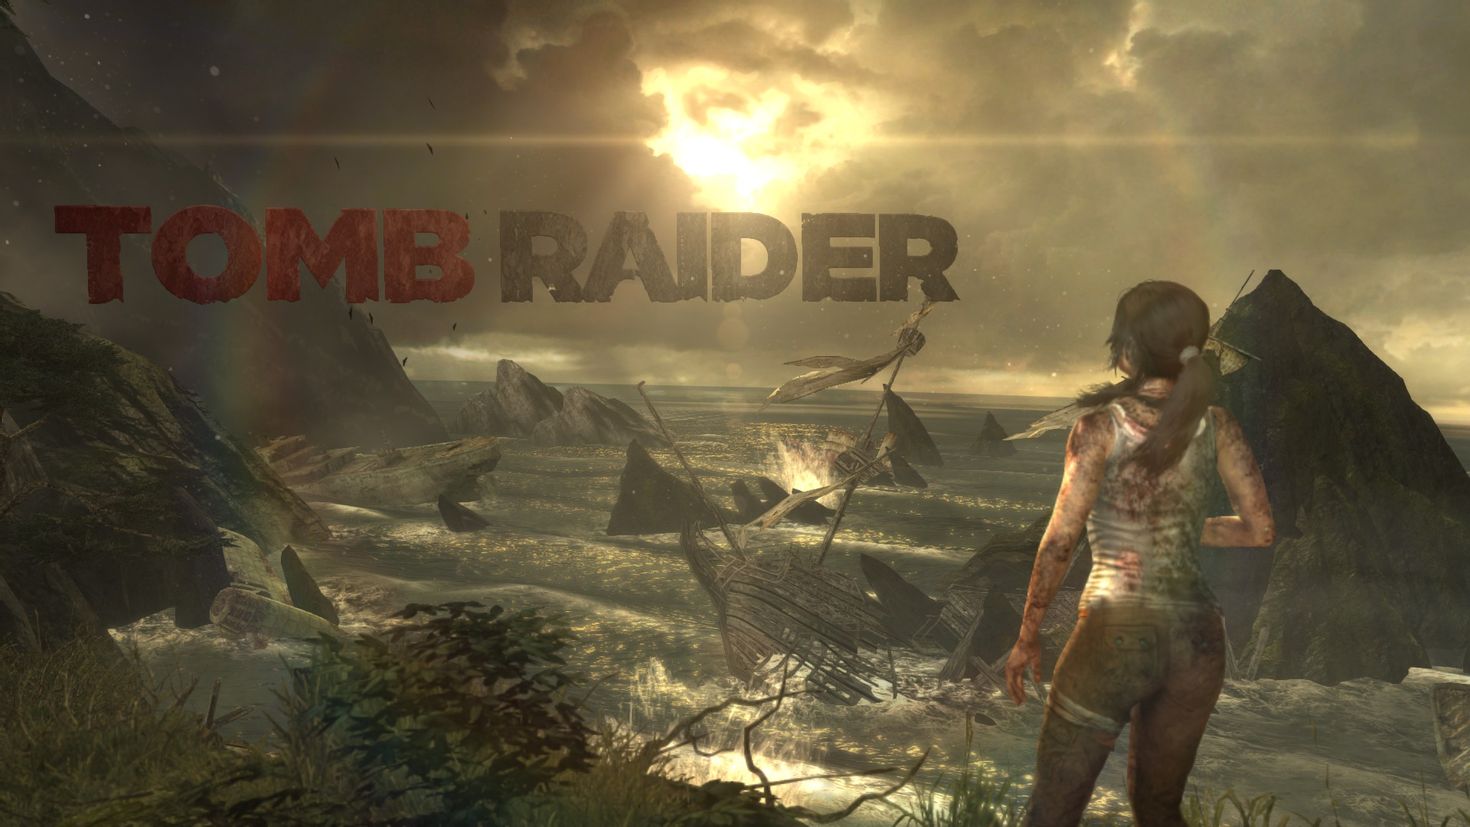 Игры 2013 на телефон. Томб Райдер игра 2013. Tomb Raider: игра новая 2013. Томб Райдер 11.